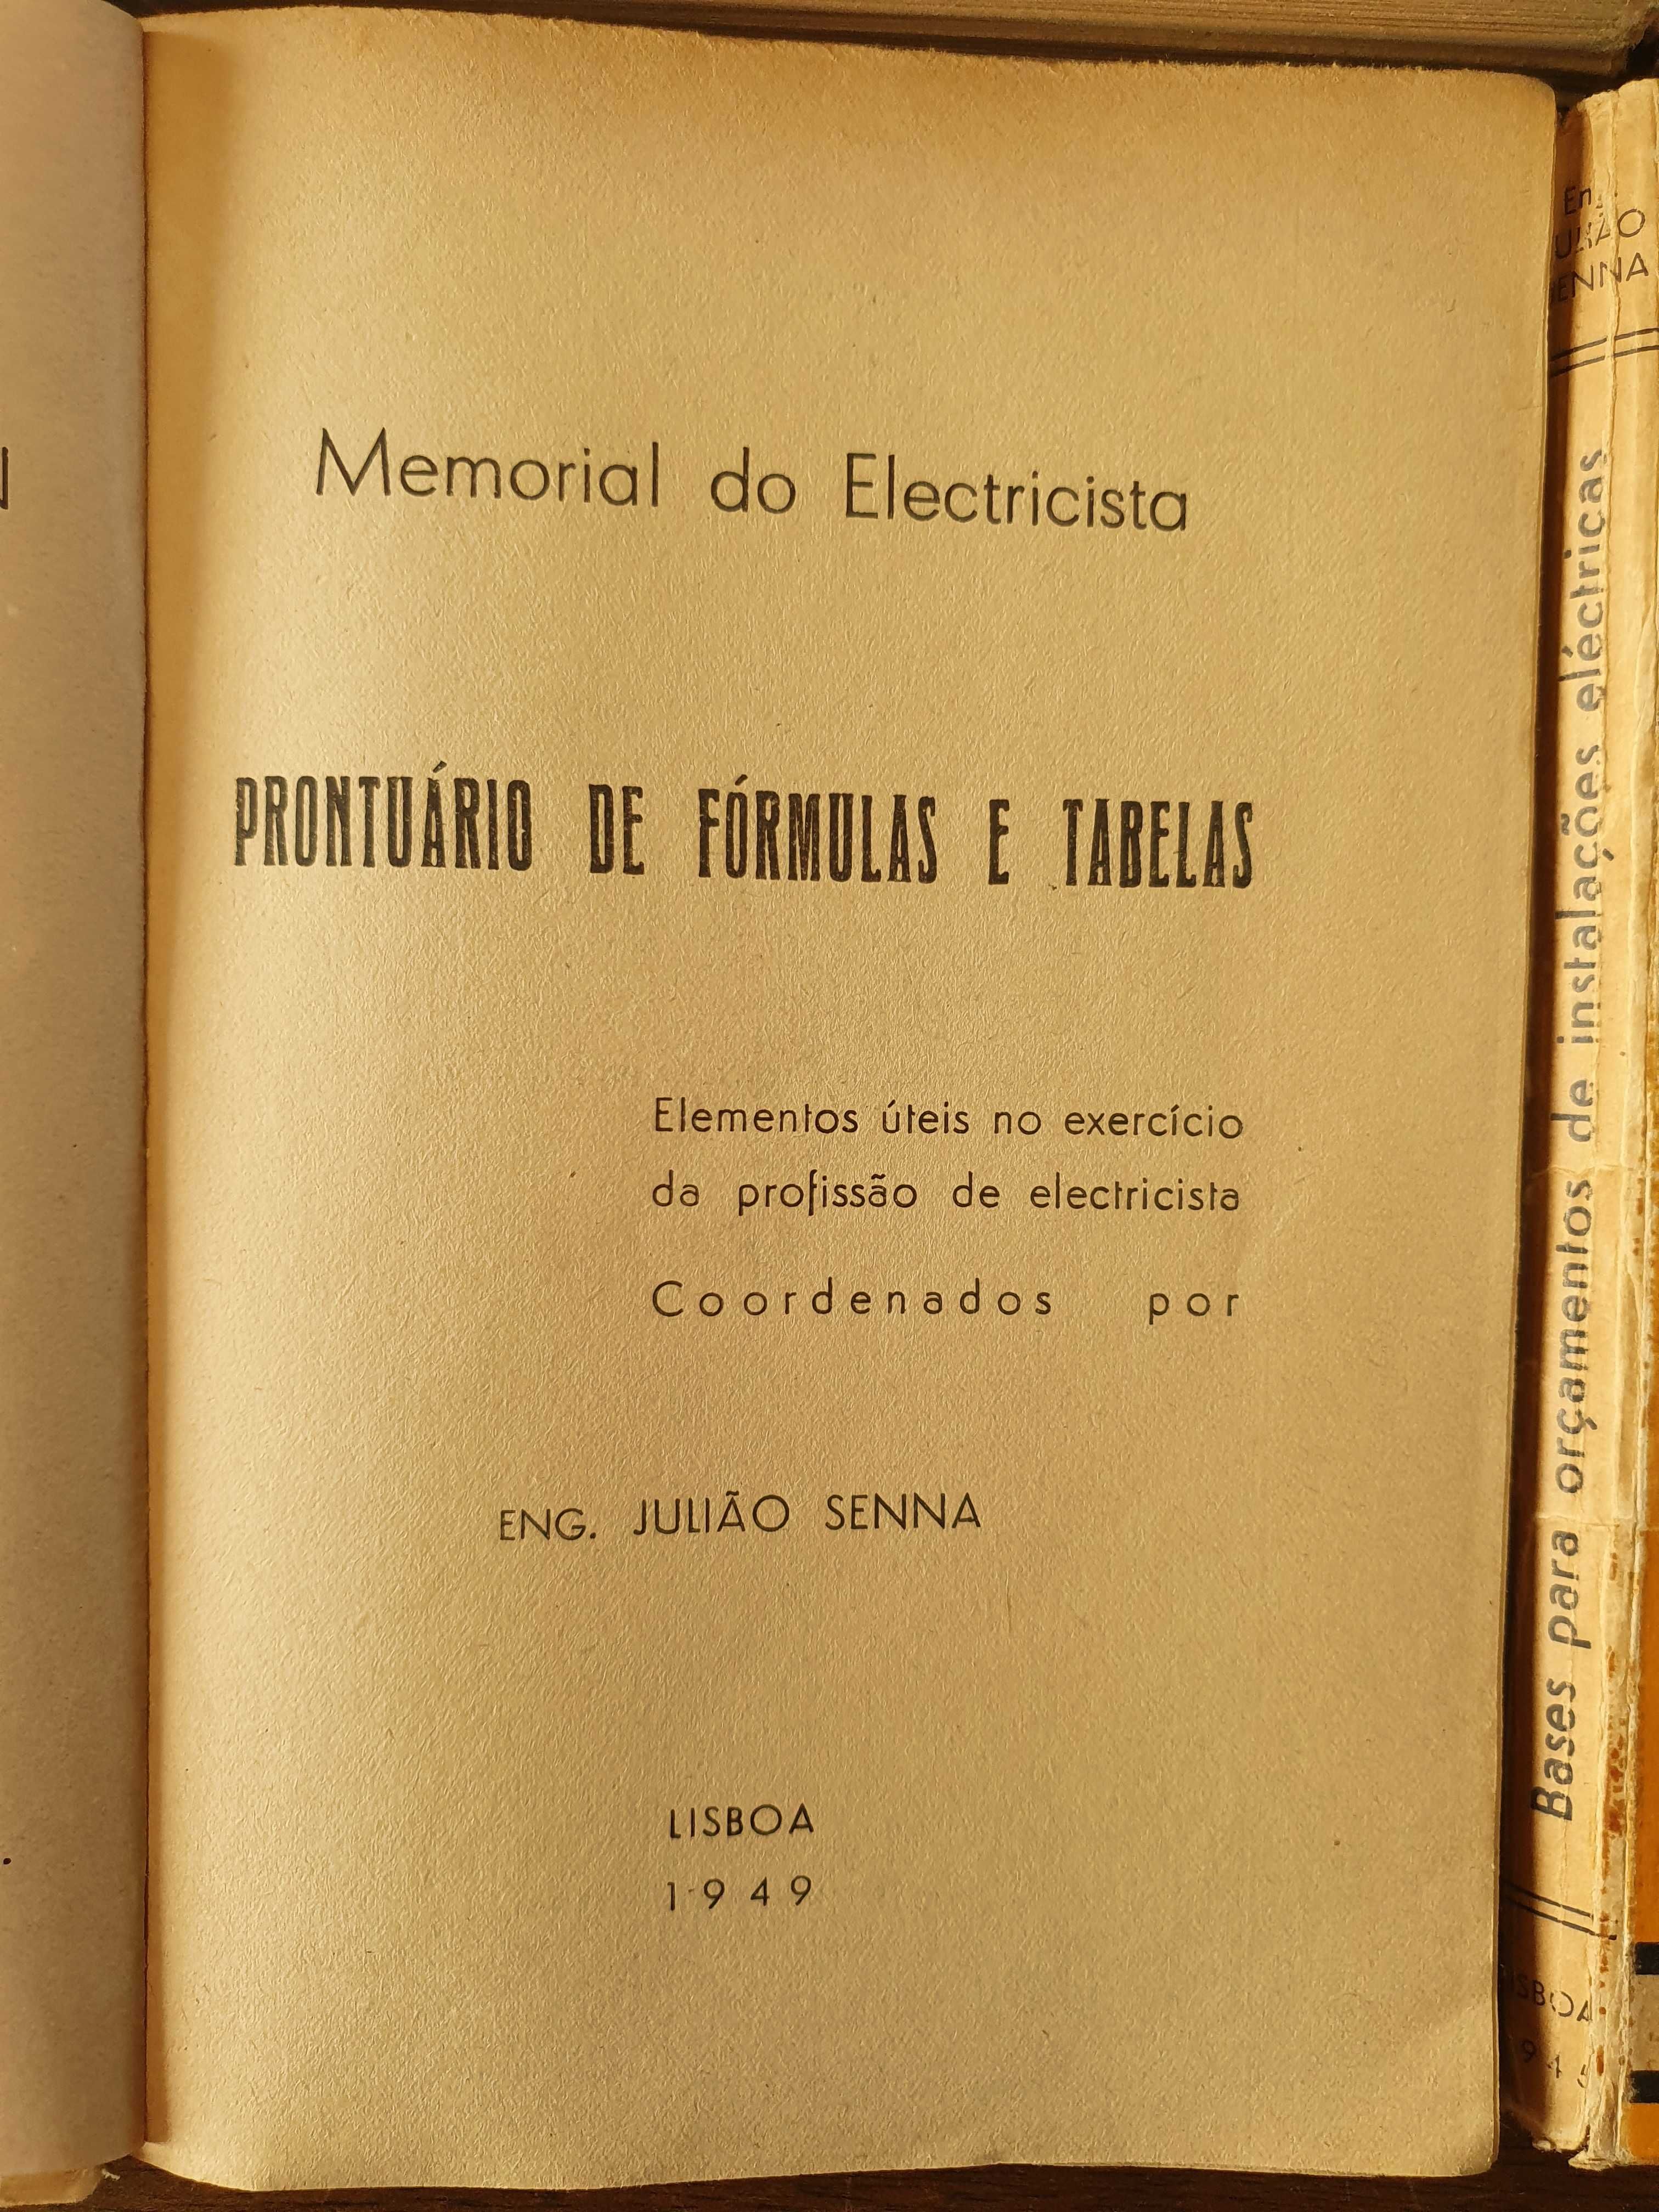 Livros "Memorial do Electricista" por Engenheiro Julião Senna